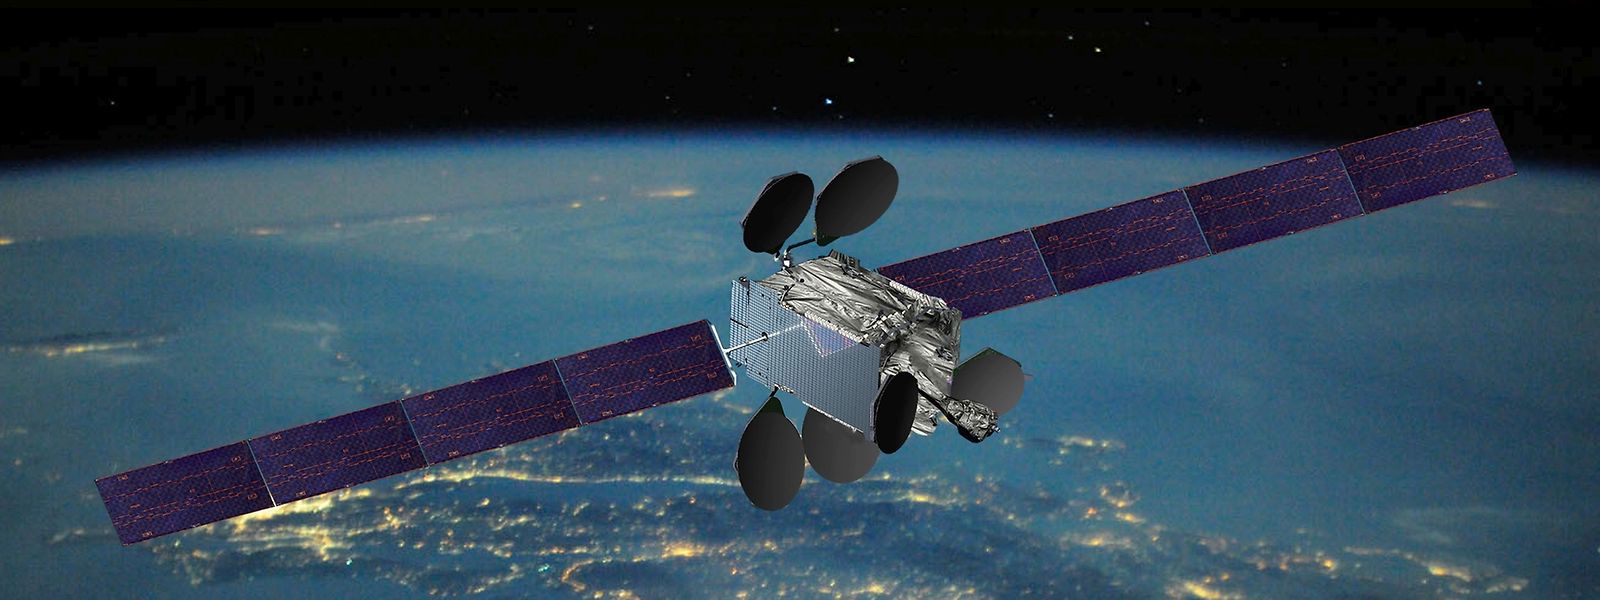 Der Satellitenbetreiber Intelsat hat finanziell äußerst schwierige Jahre hinter sich.  